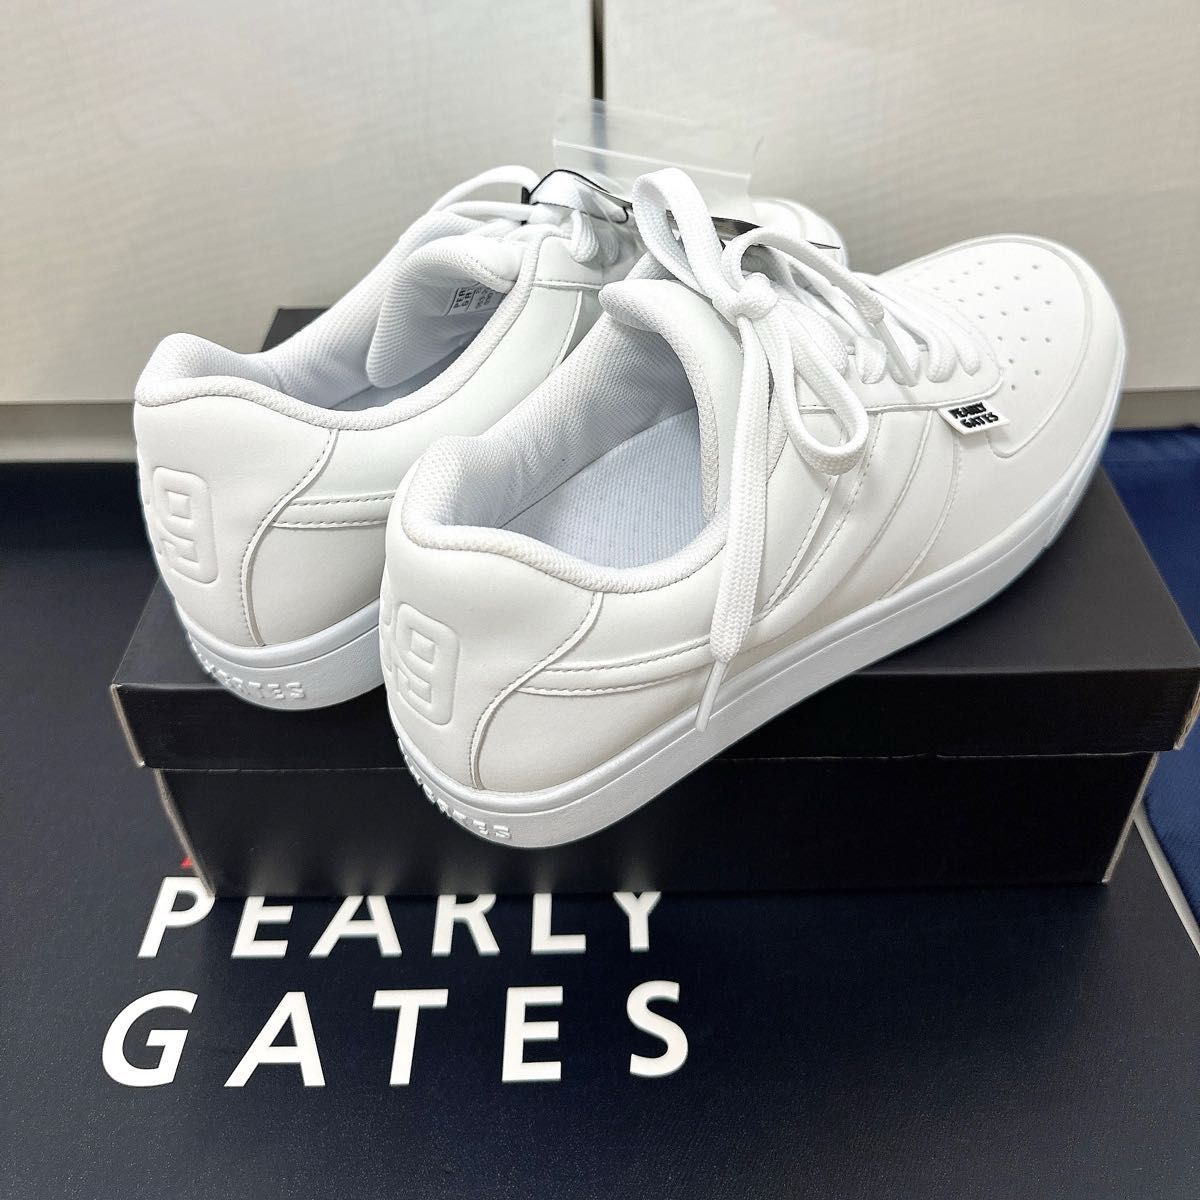 【 新品 ローカット PEARLY GATES 】 パーリーゲイツ 27.0cm シューズ ホワイト スパイク 正規品 スニーカー